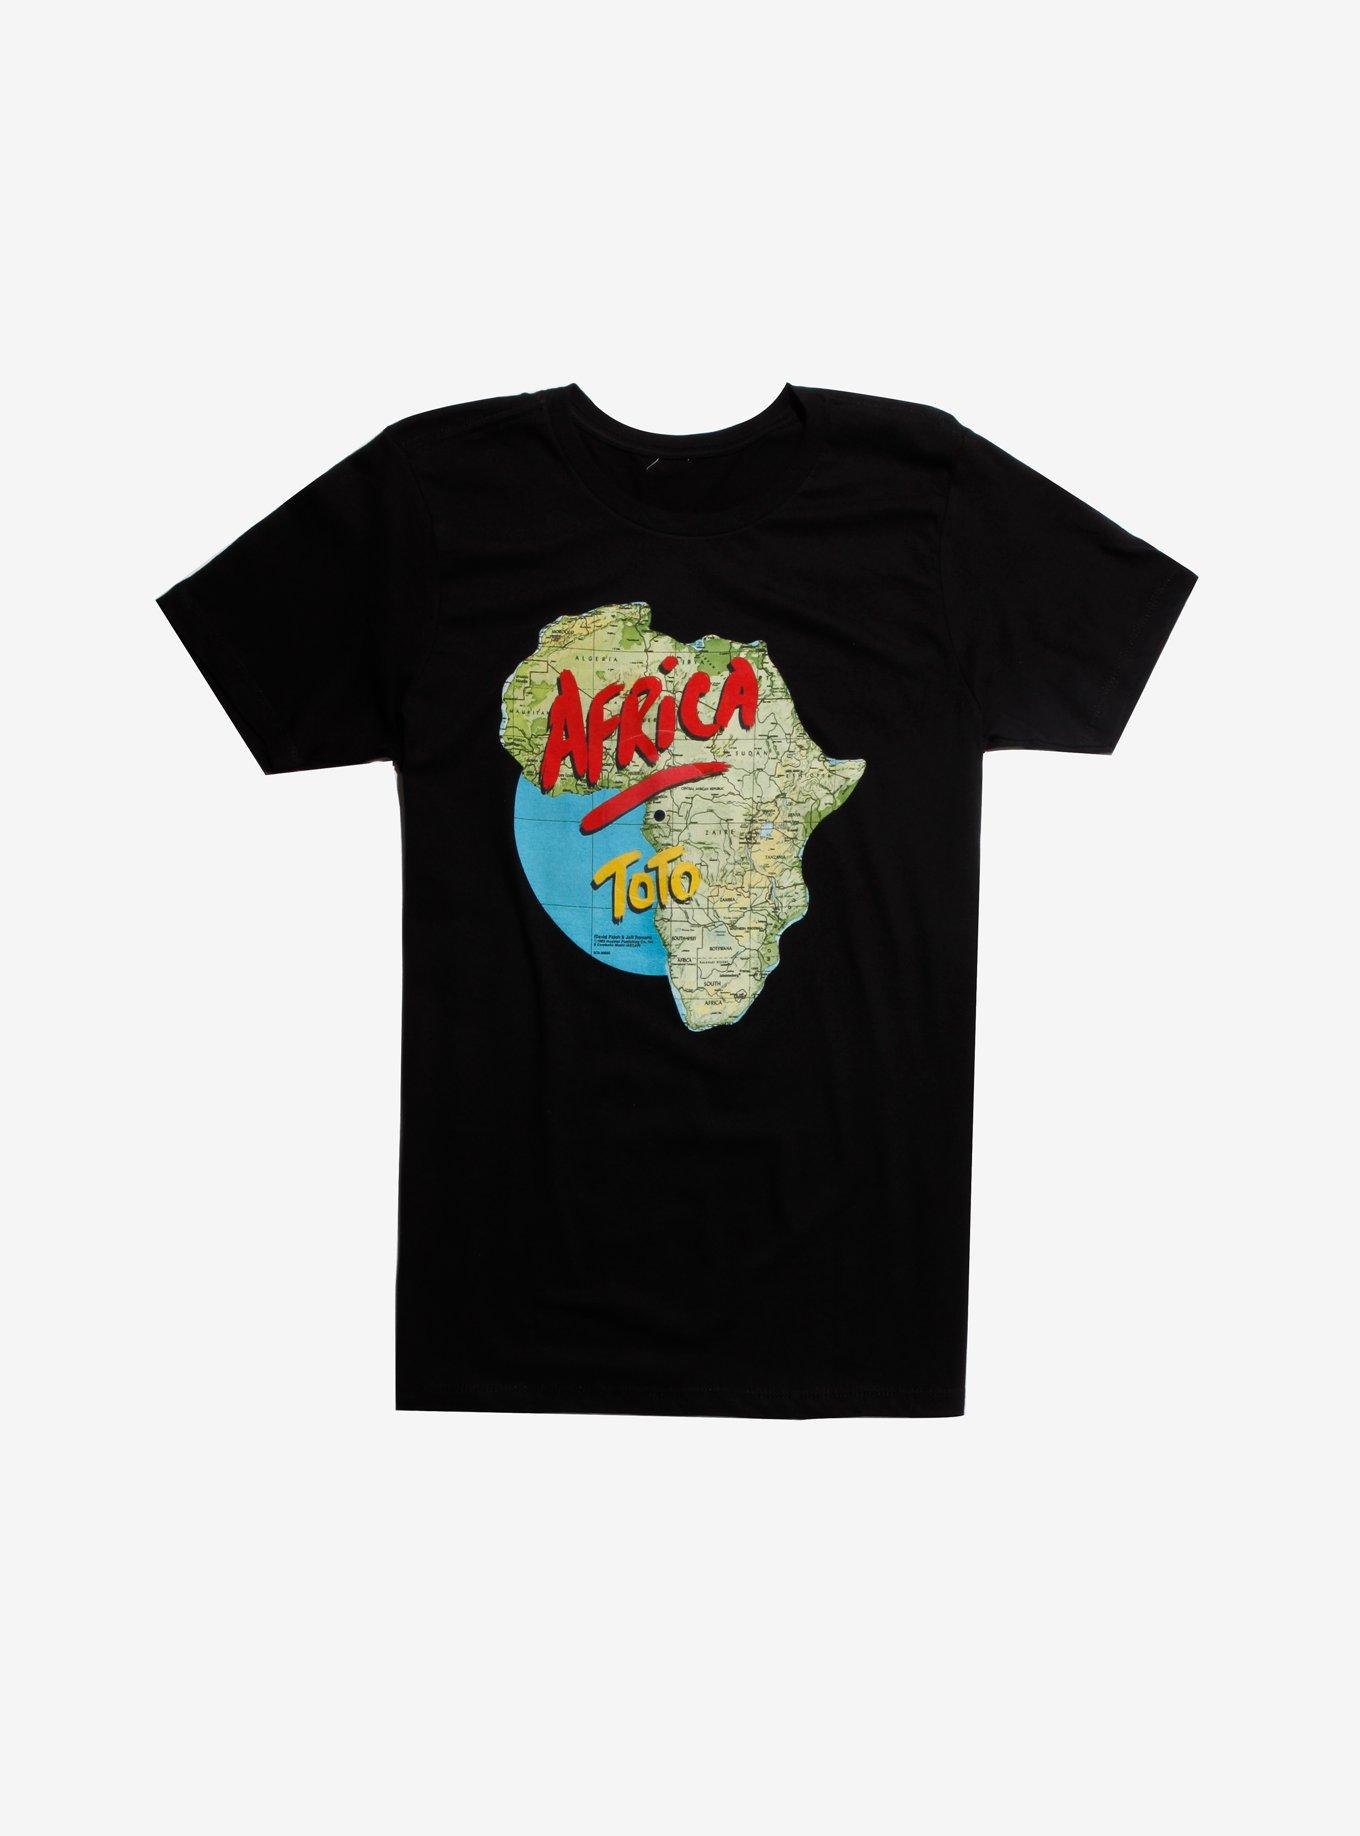 Toto Africa Vinyl T-Shirt, BLACK, hi-res